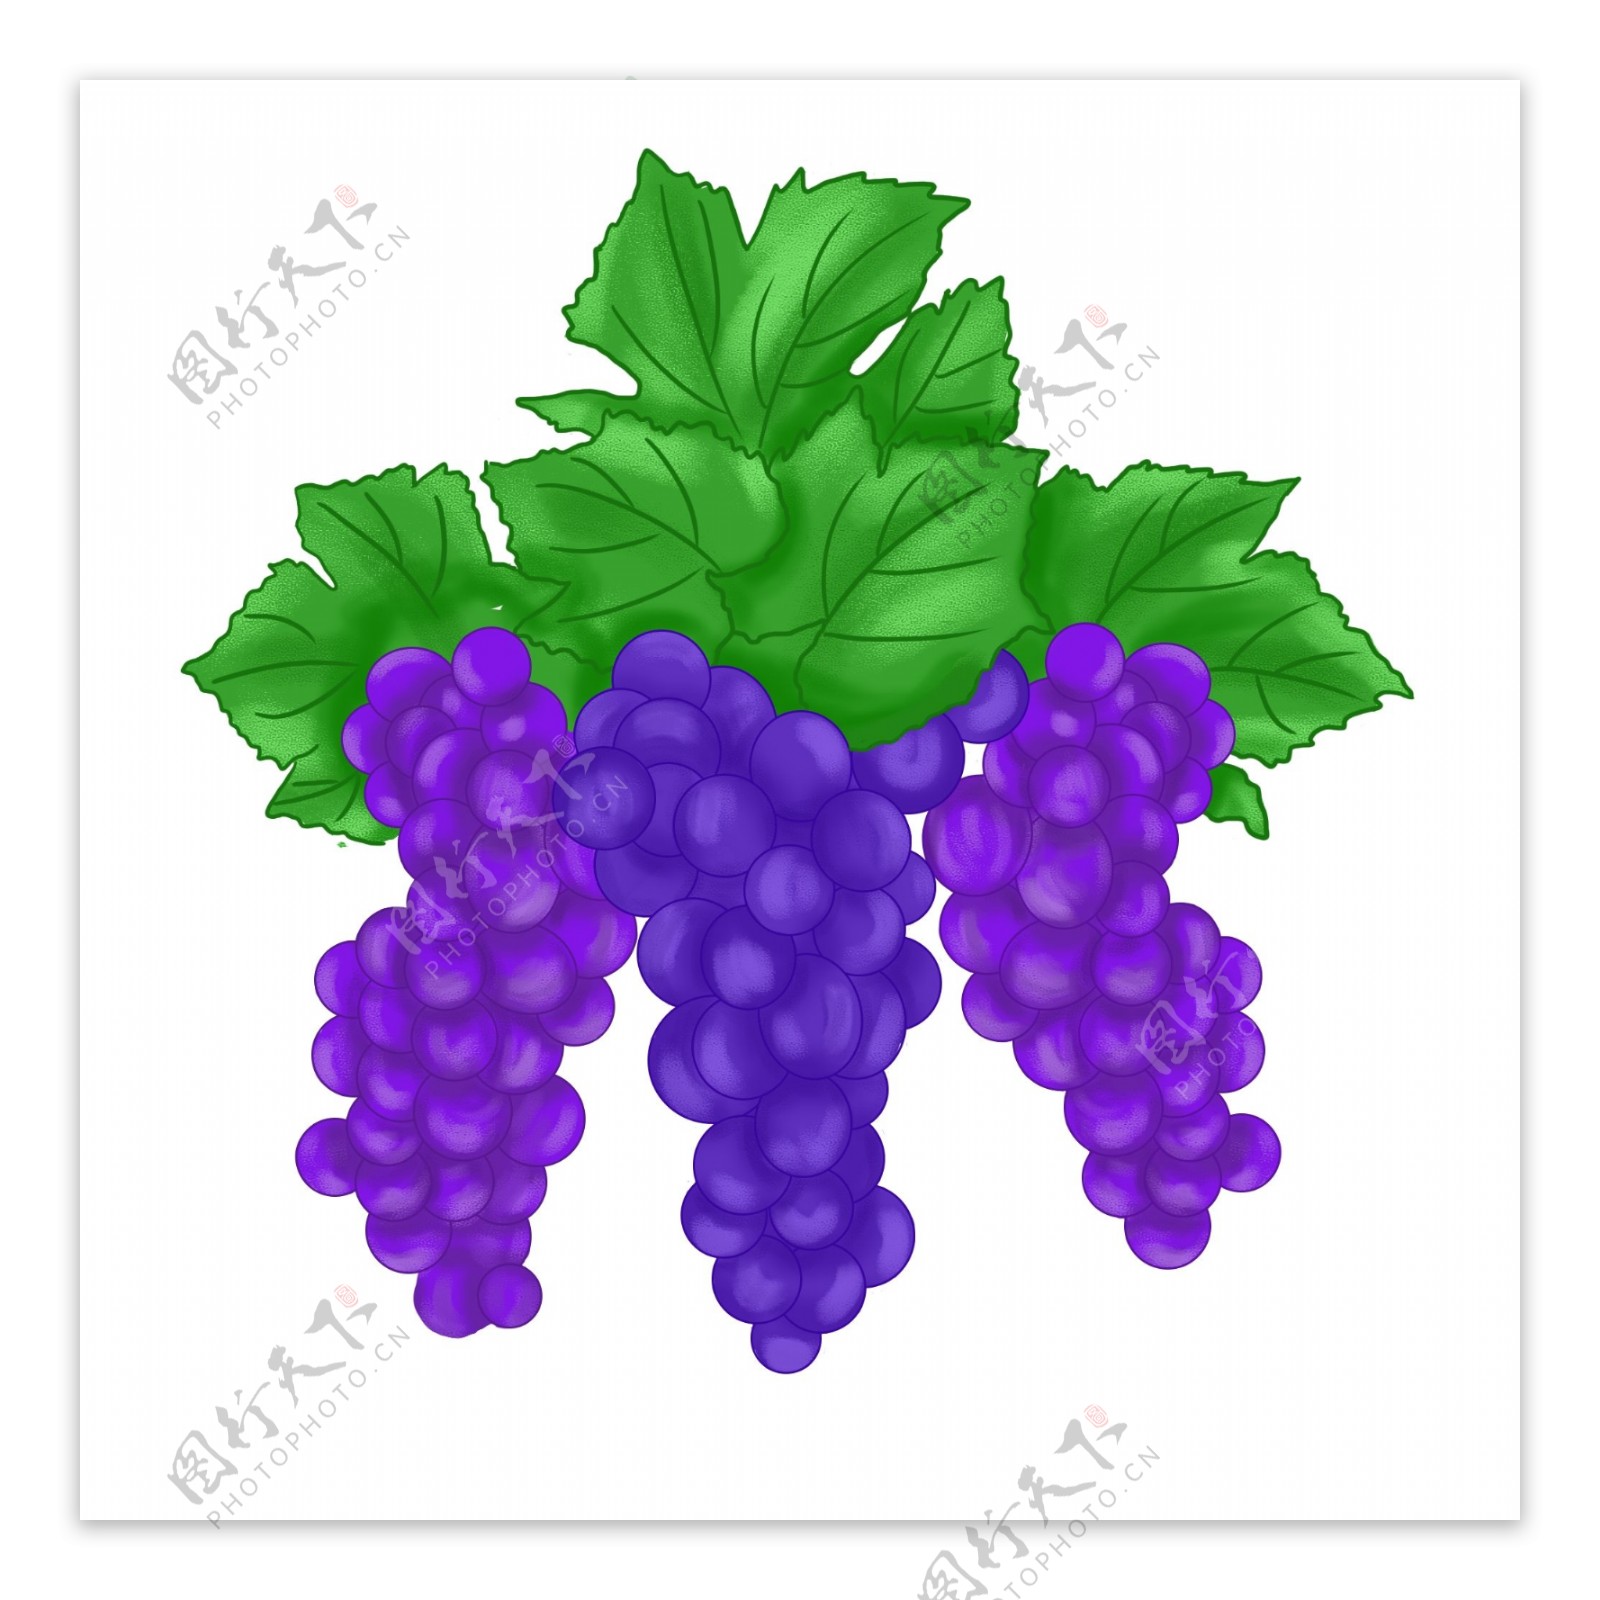 水果葡萄紫色小清新手绘生鲜绿叶